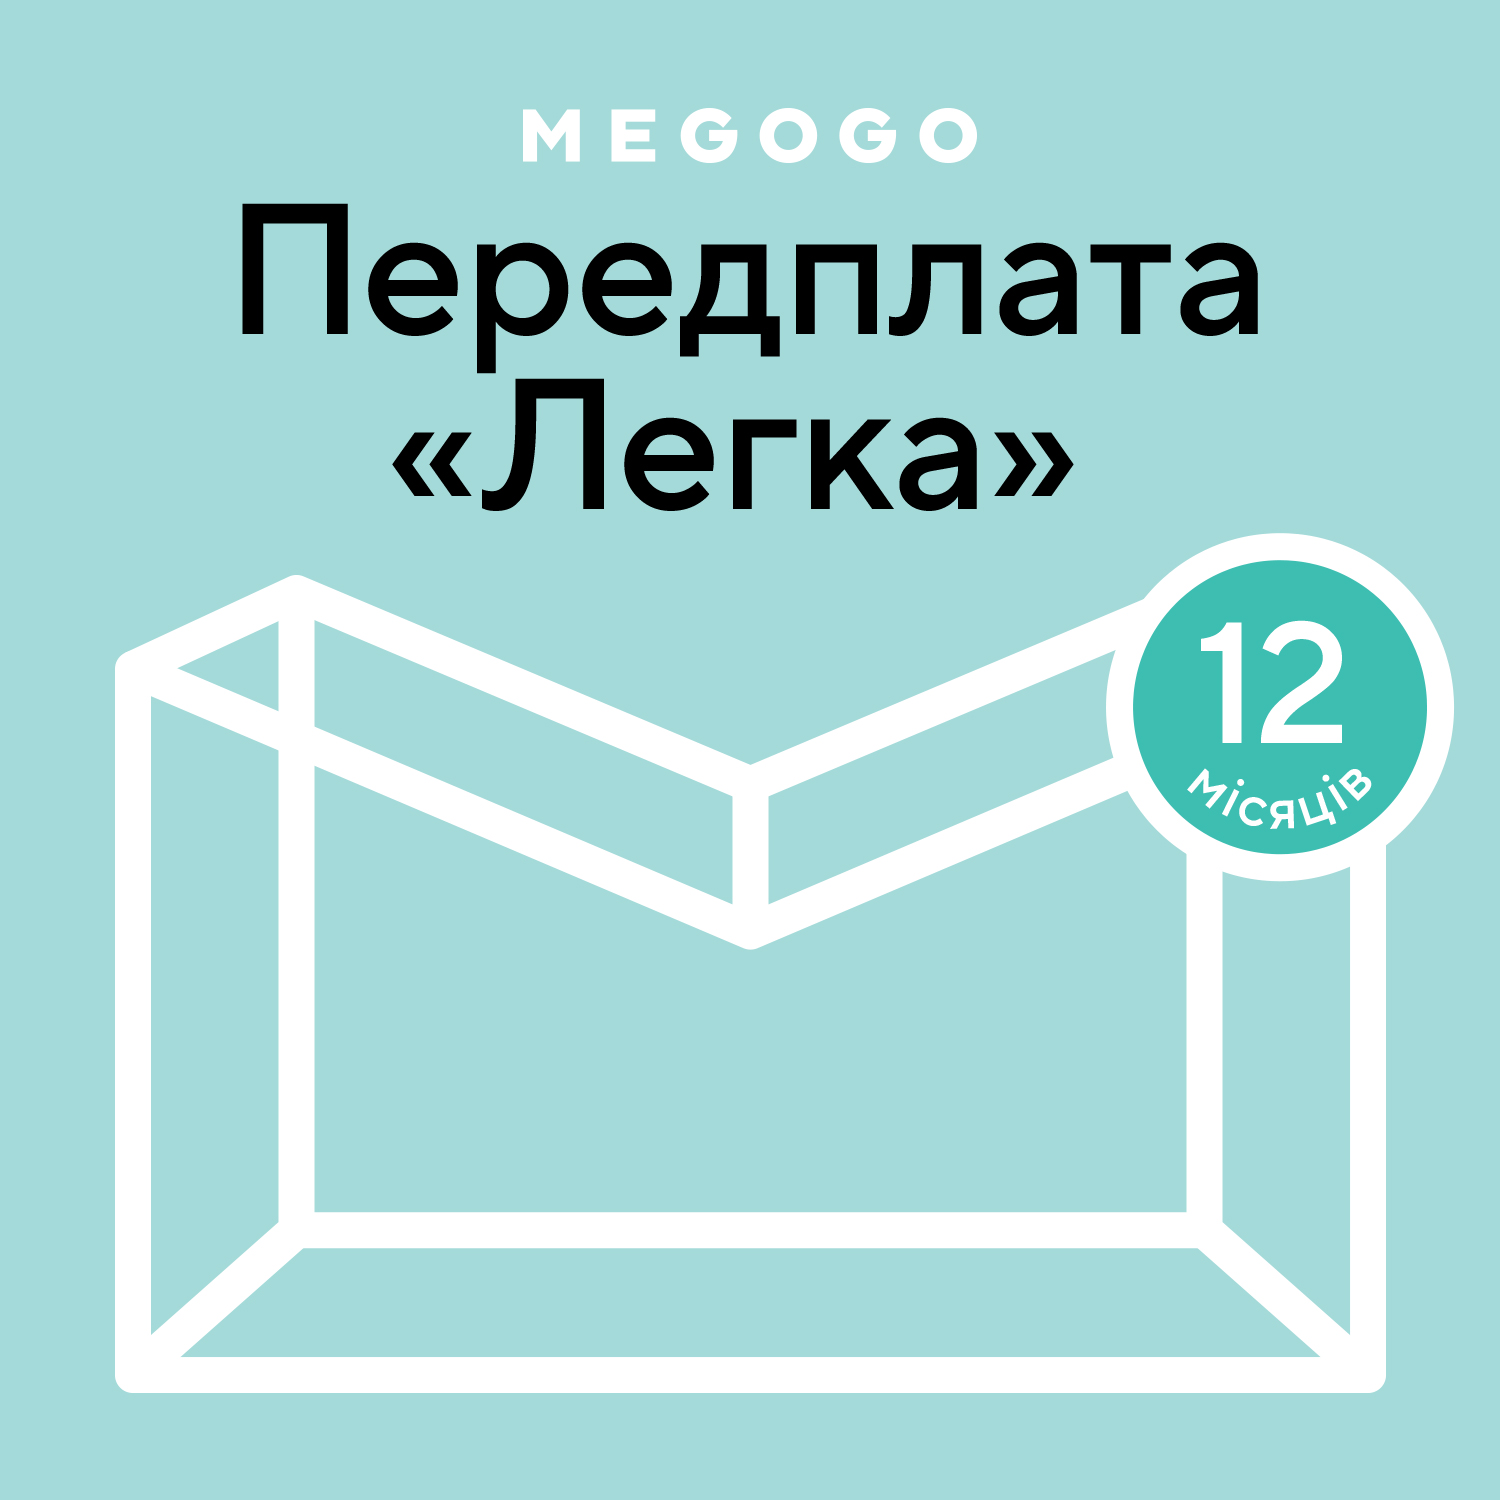 MEGOGO «Кіно і ТБ: Легка» 12 міс в Києві